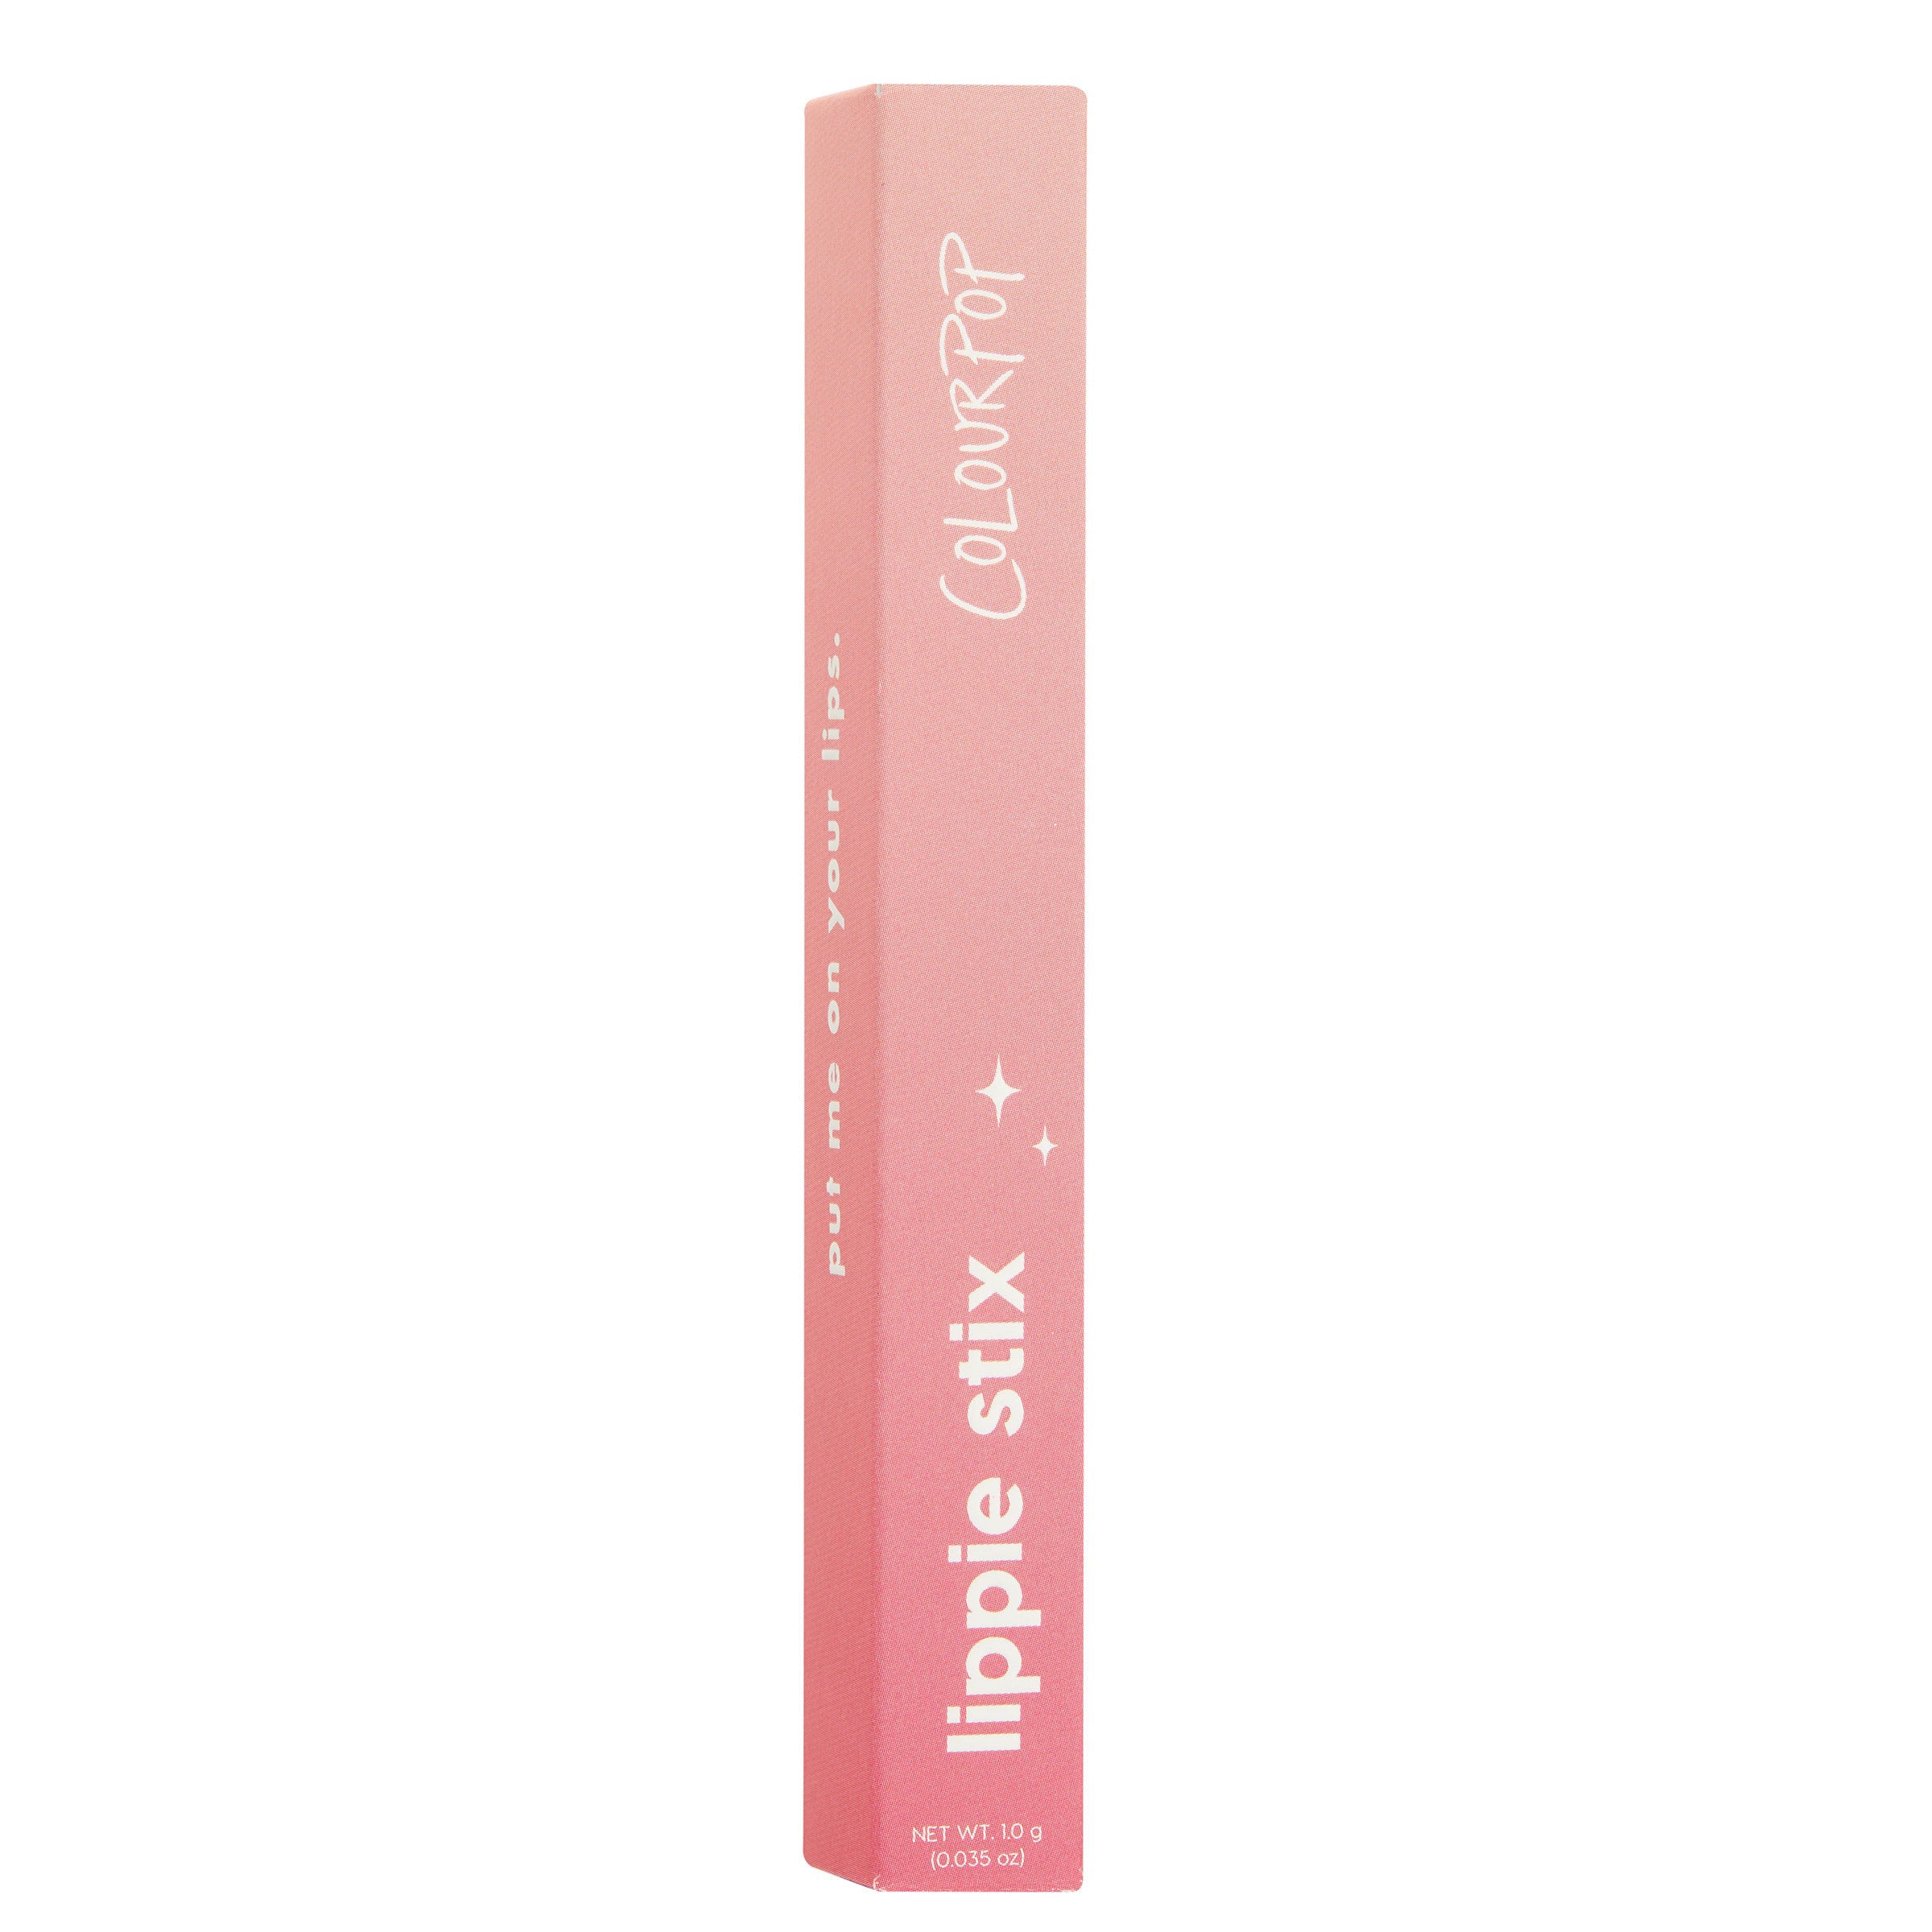 ColourPop Lippie Stix in Daytrip a vivid coral pink packaging